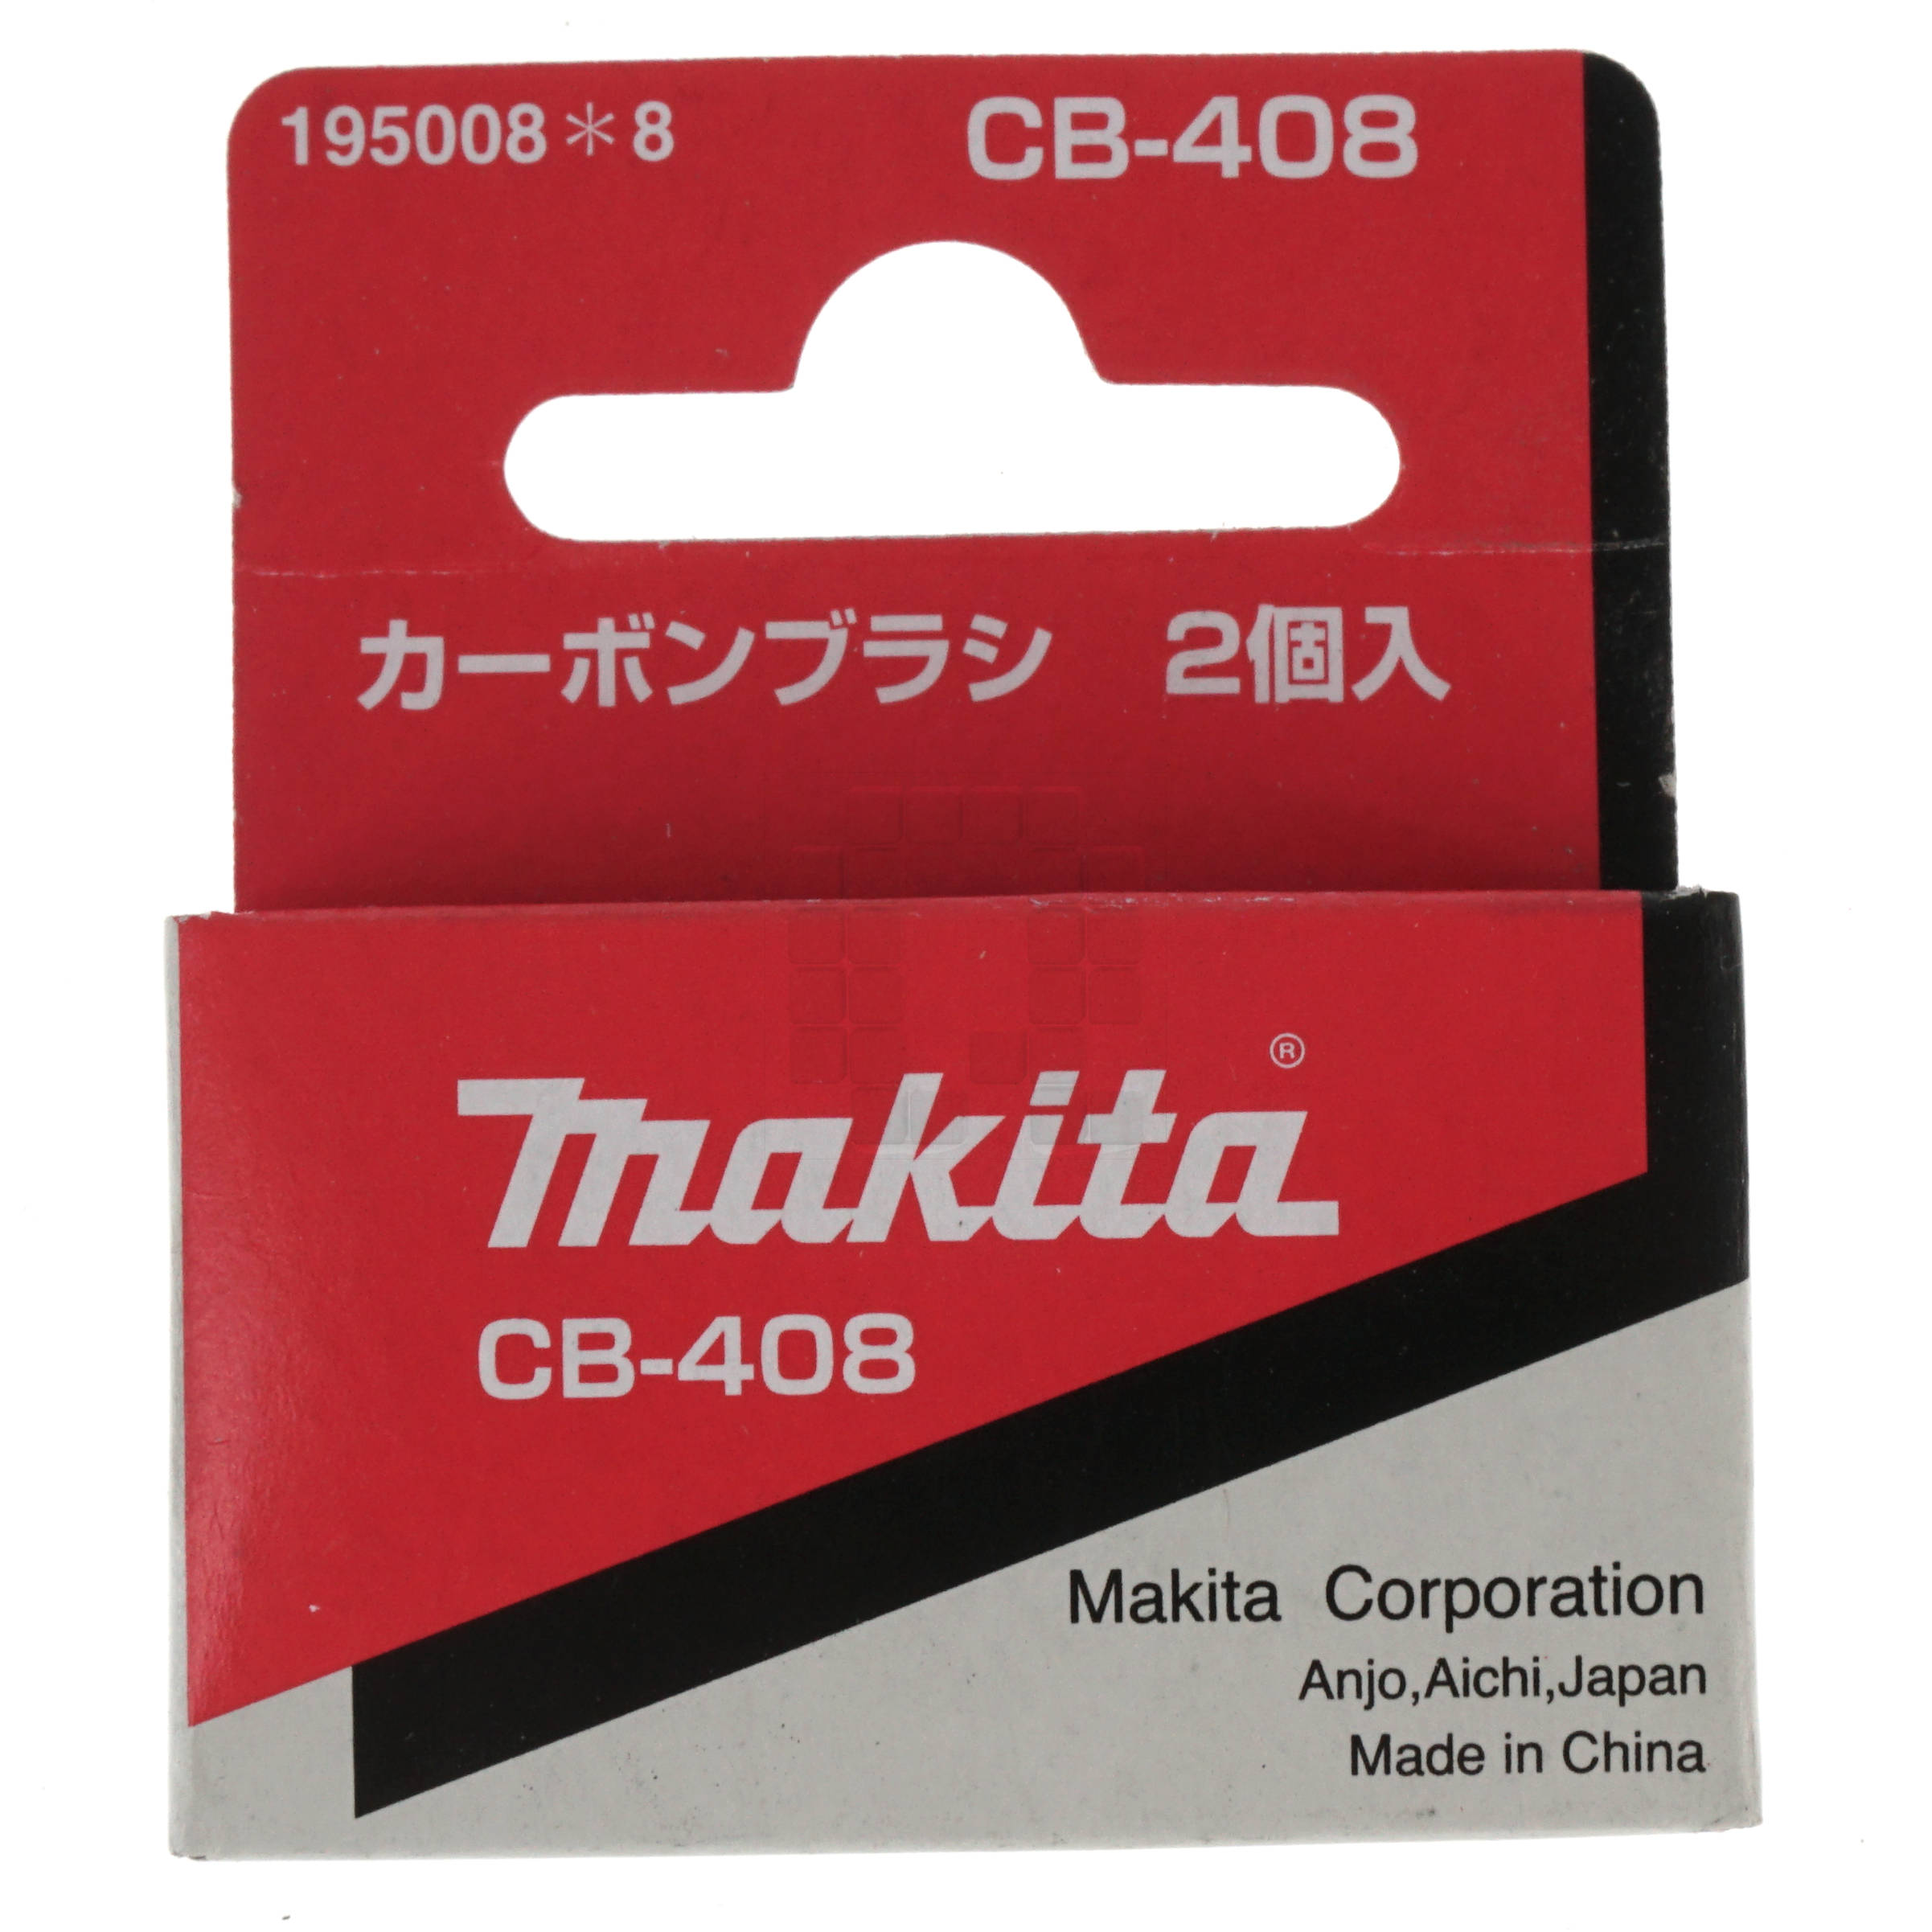 Makita CB-408 Carbon Brush Set, 195008-8